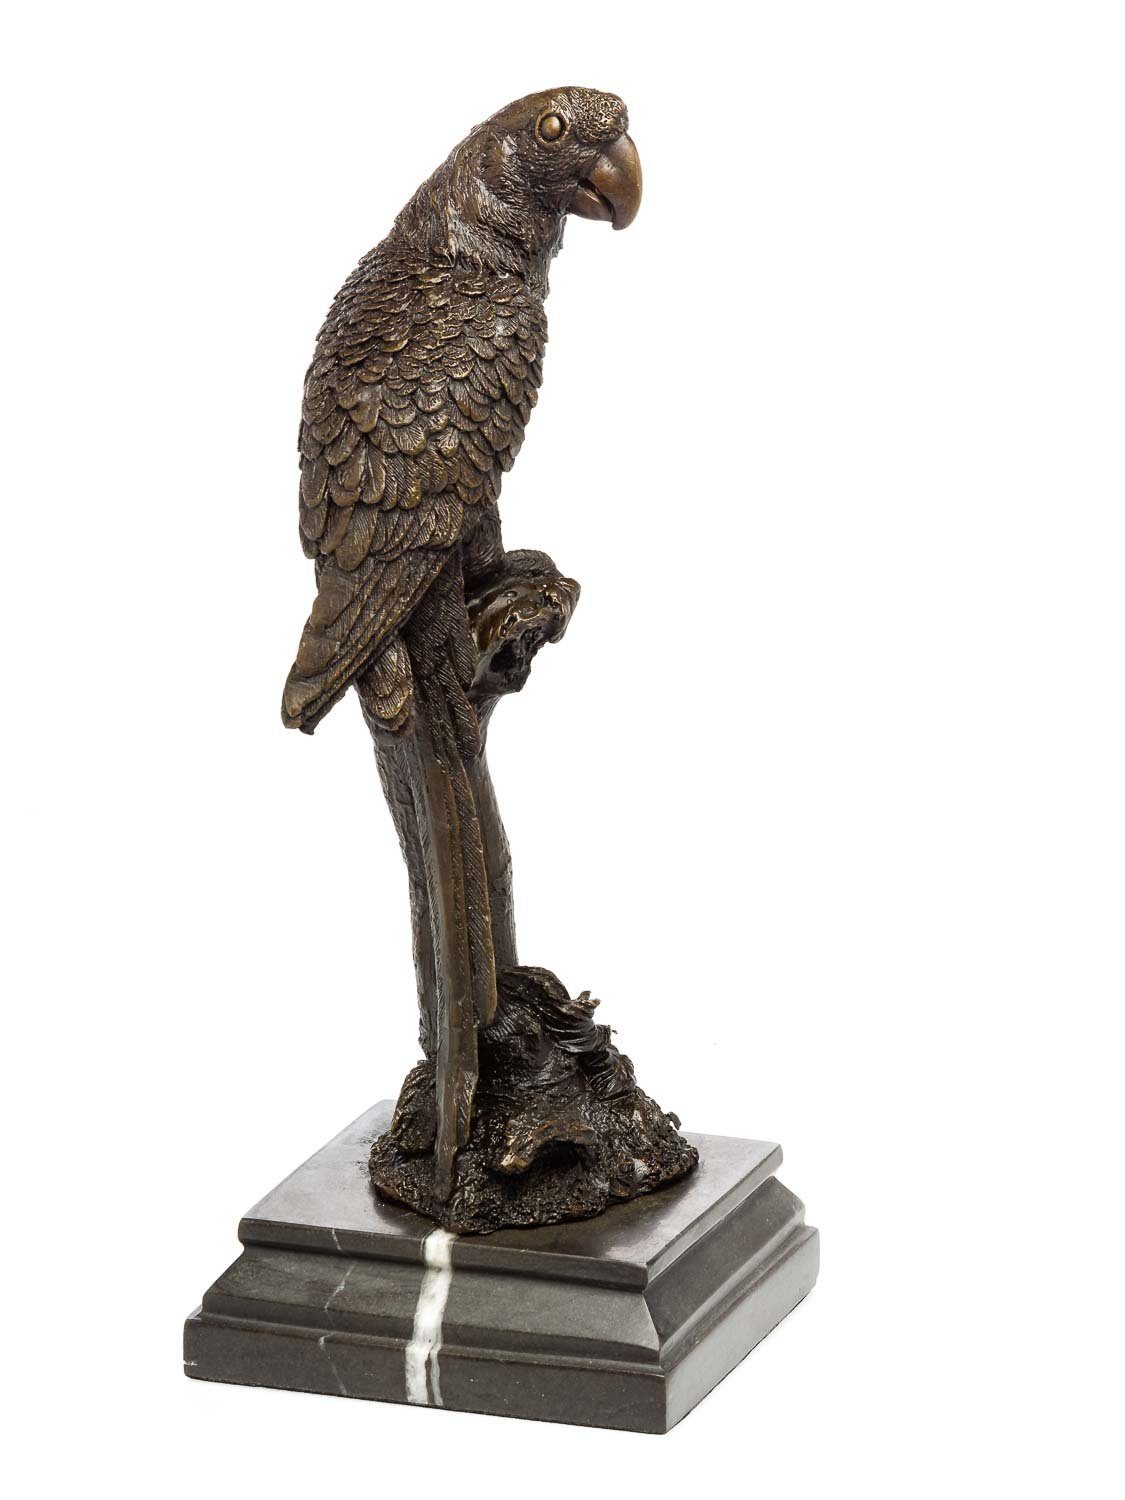 Aubaho Ara Figur Vogel Bronzeskulptur 34cm Skulptur auf Bronze An Skulptur Papagei Ast